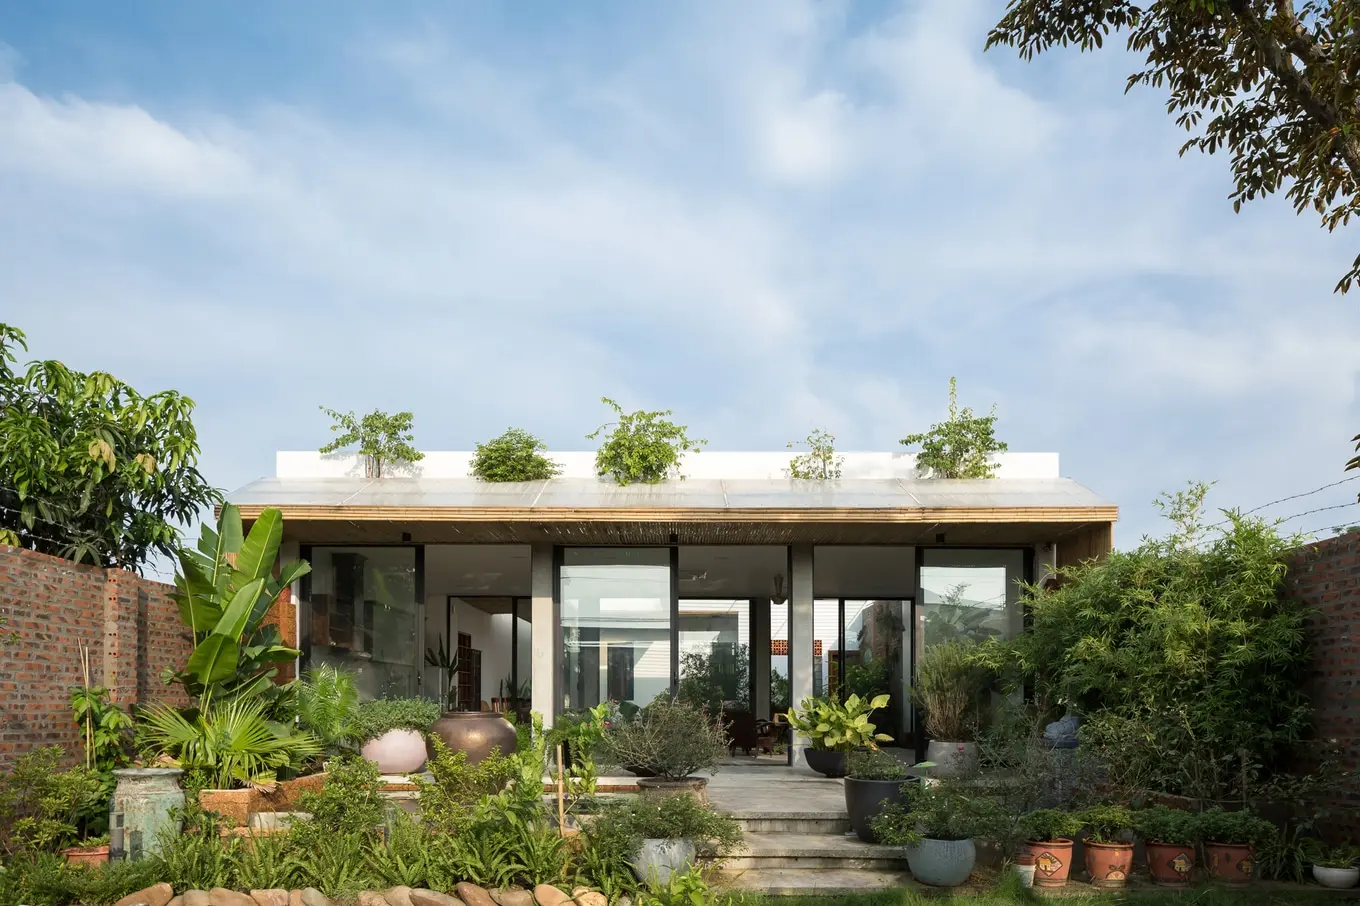 Thiết kế cân đối của nhà vườn cấp 4 mang đến sự cân đối và tính thẩm mỹ cho căn nhà